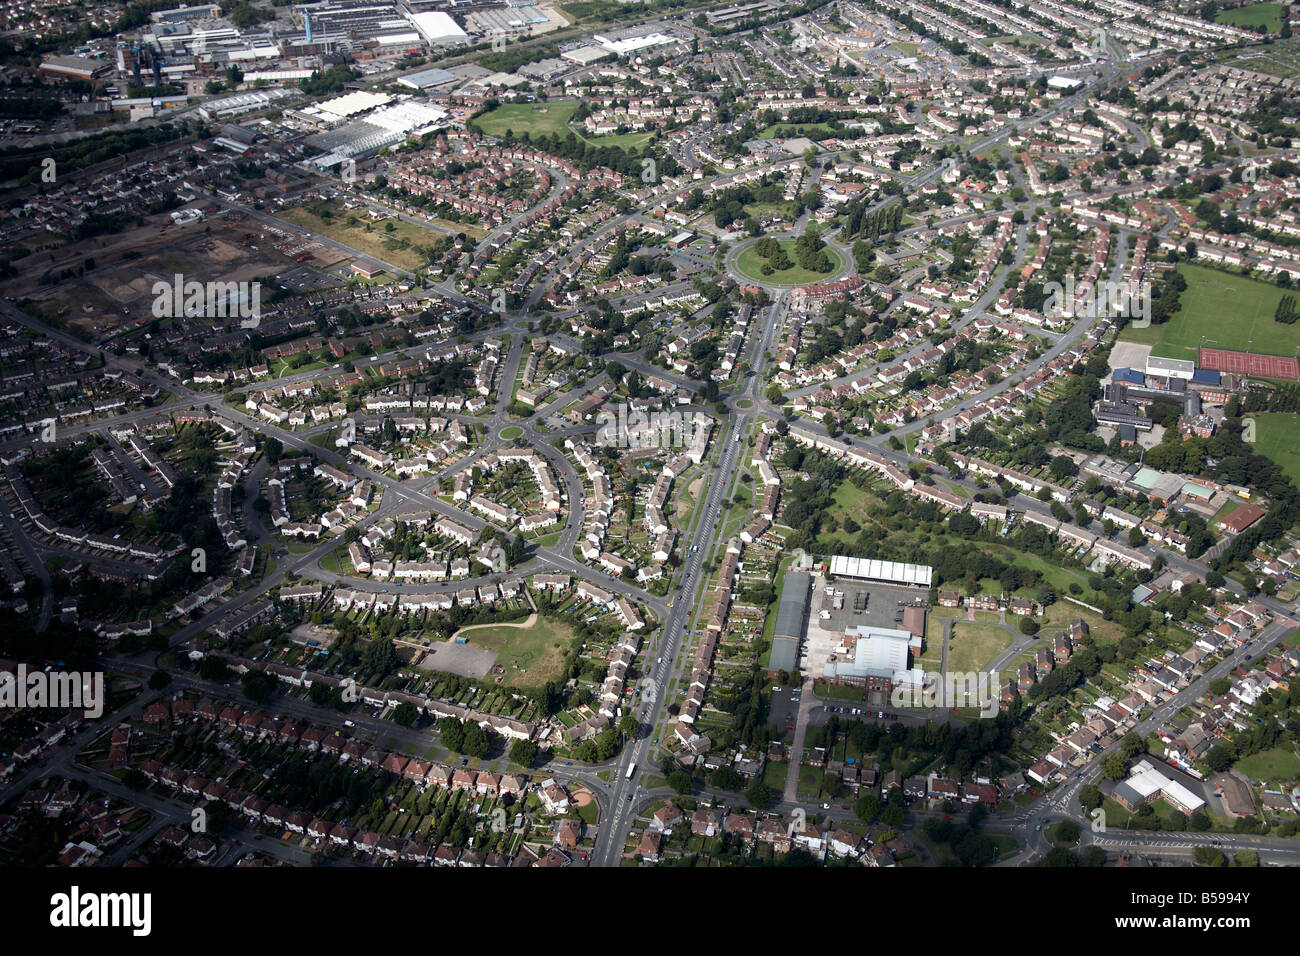 Vista aerea a nord-ovest di case suburbane 1° 2° 3° Avenue Bushbury Wolverhampton WV10 Inghilterra REGNO UNITO alto livello obliqua Foto Stock